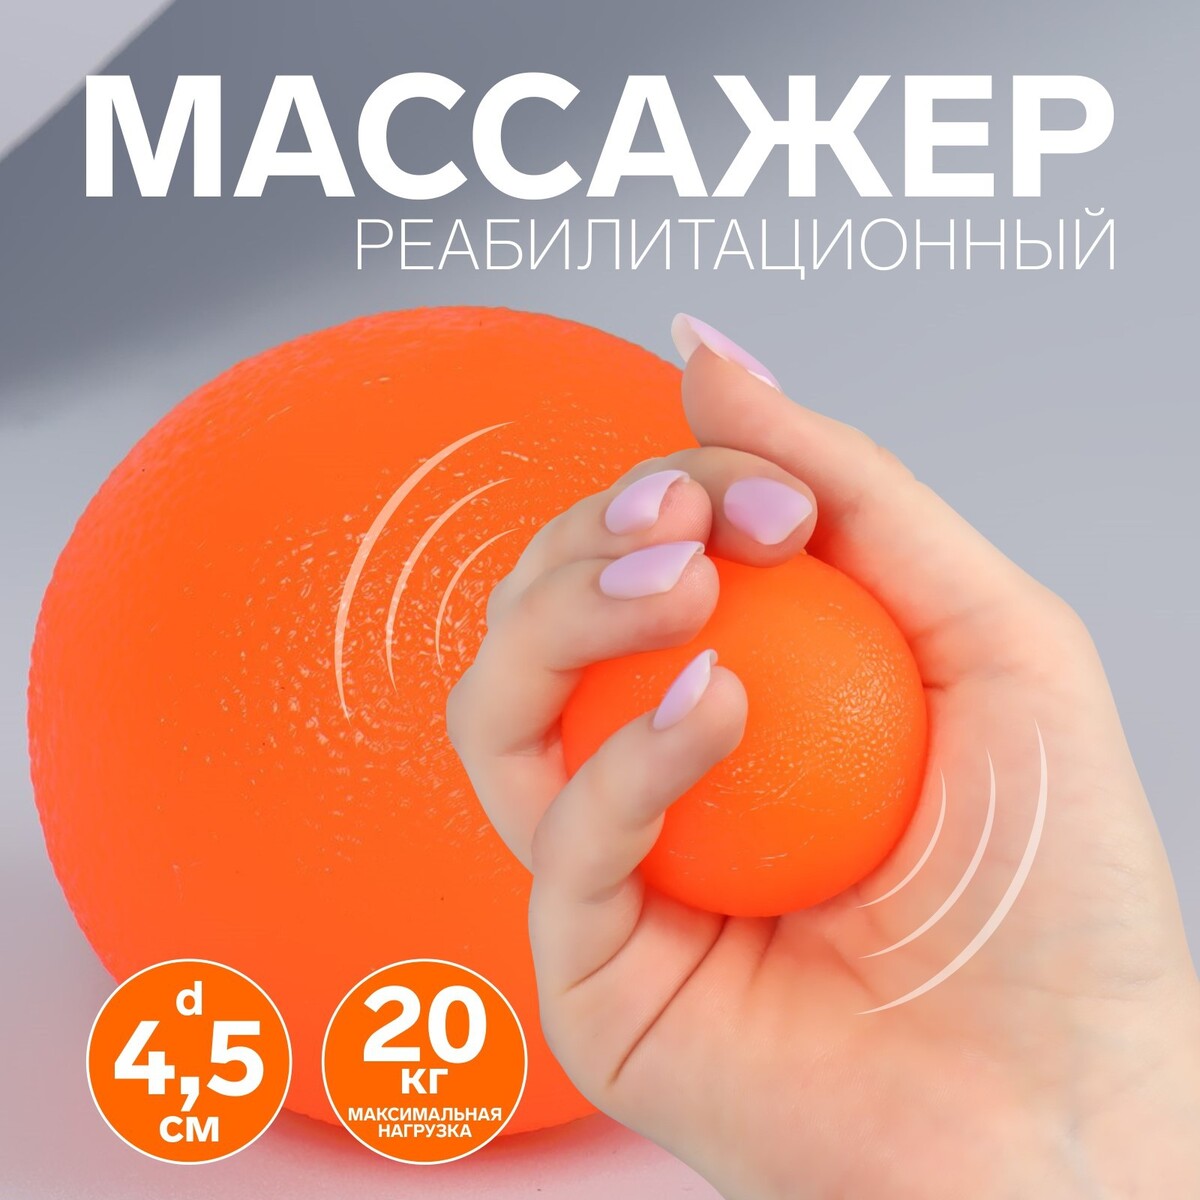 Массажер реабилитационный, 20 кг, d 4,5 см, цвет оранжевый массажер реабилитационный 20 кг d 4 5 см оранжевый